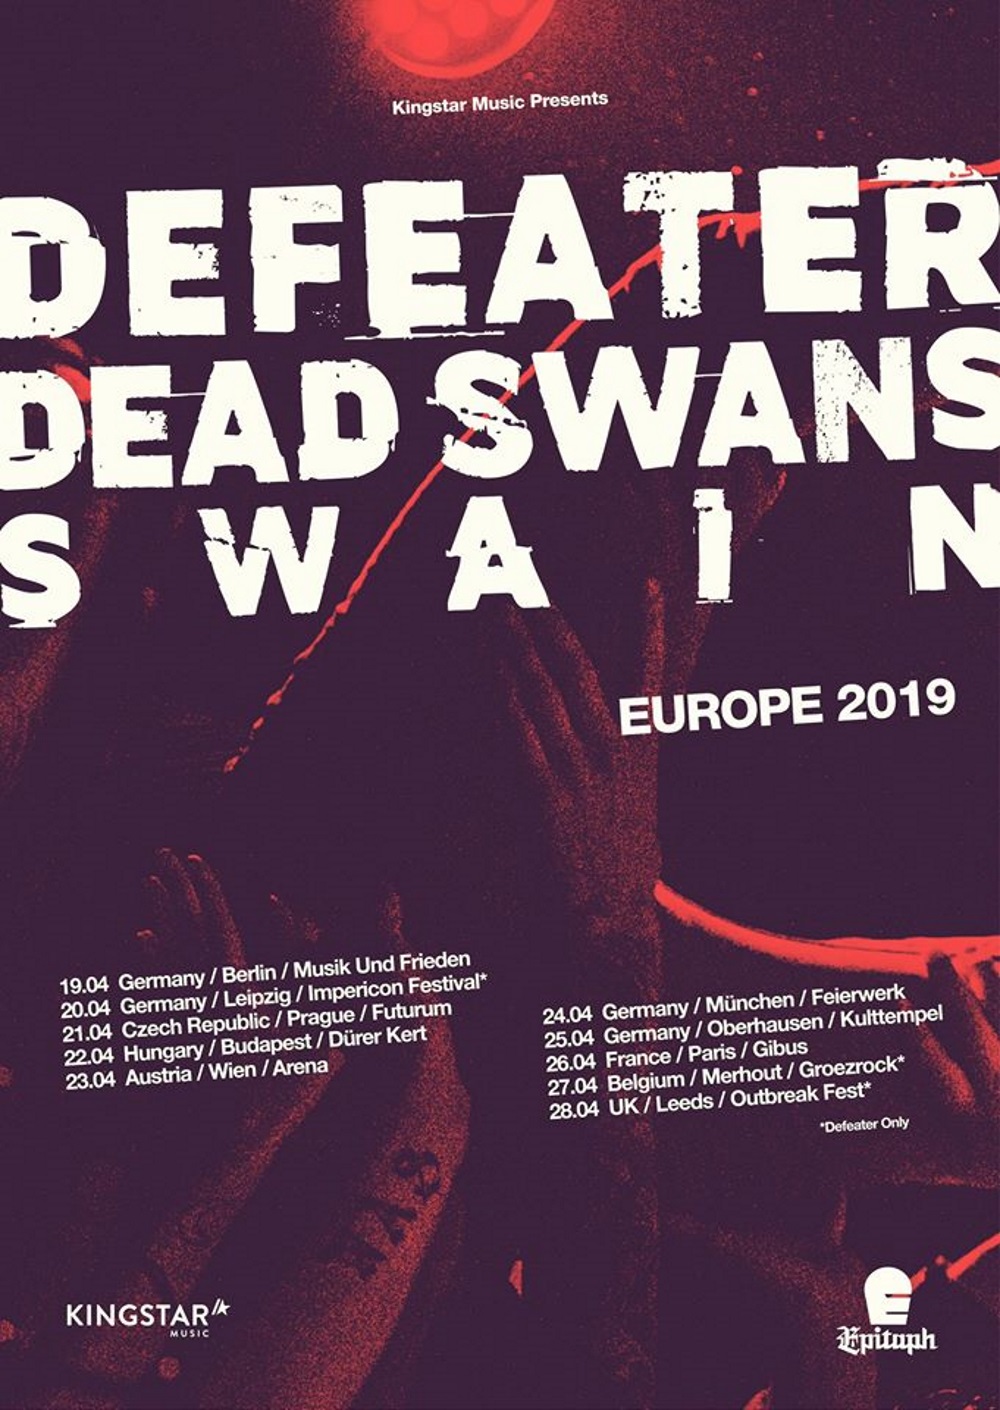 DEFEATER Euro tour 2019!